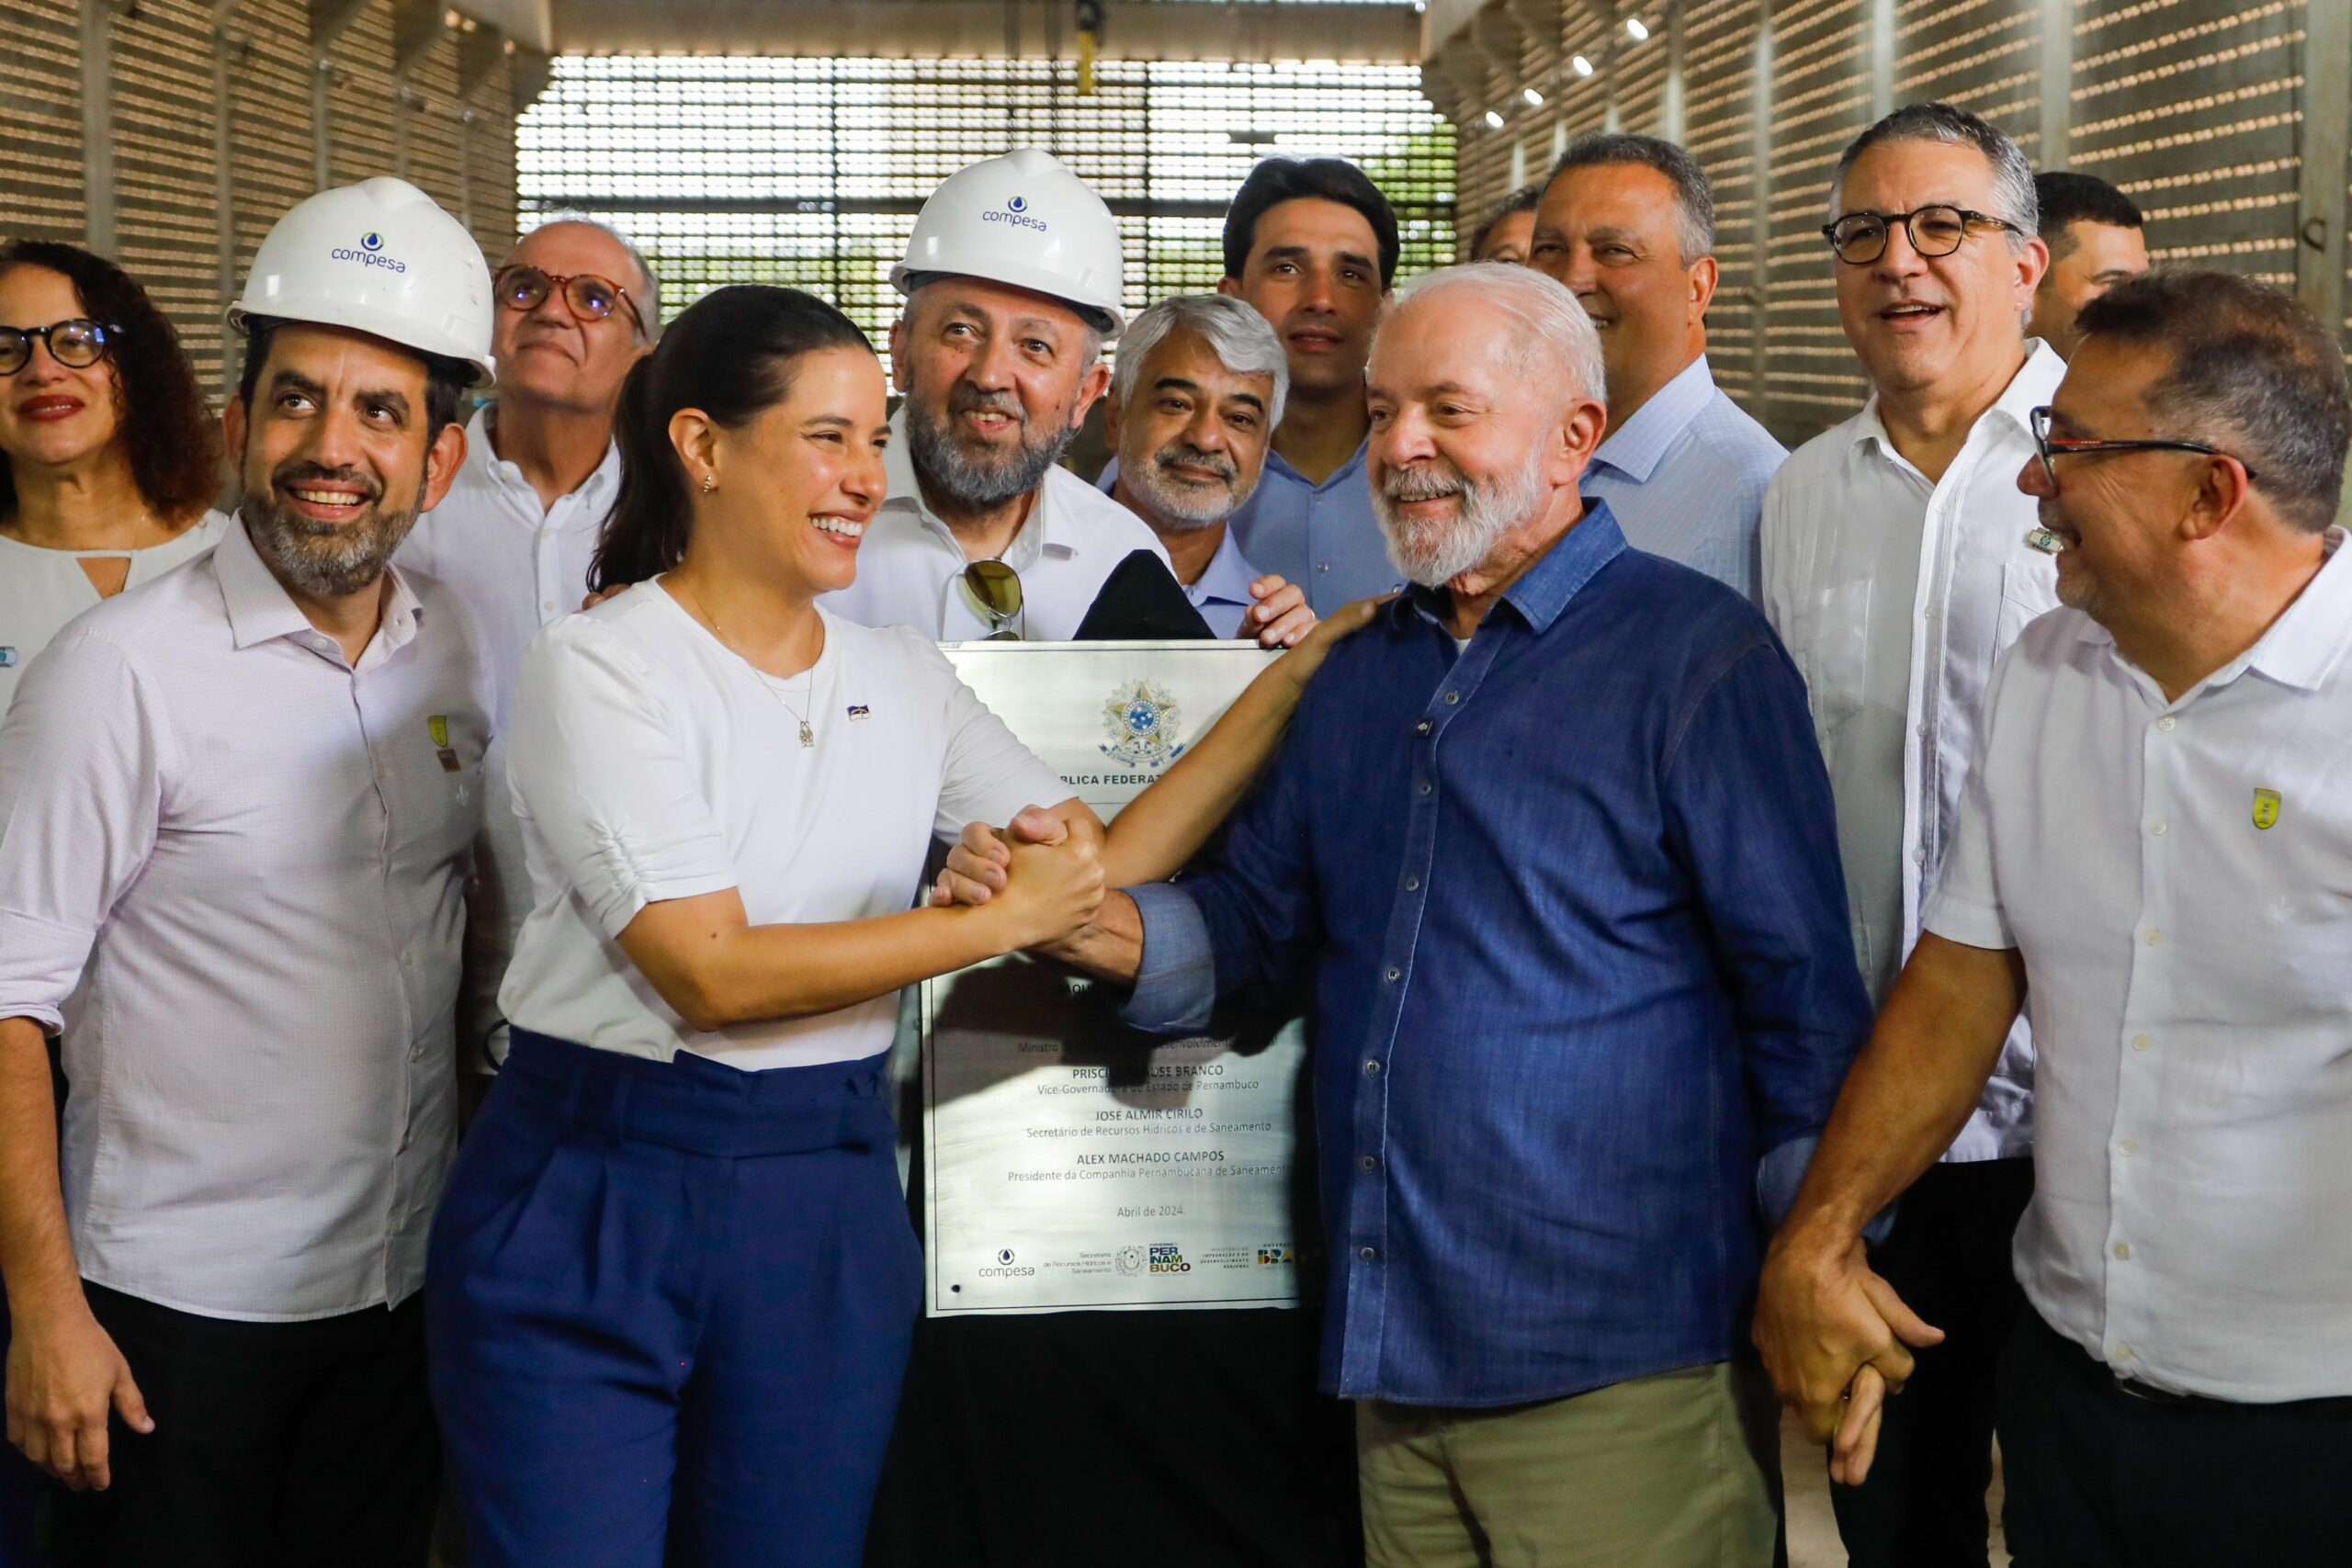 Estação elevatória da Adutora do Agreste é inaugurada pela governadora Raquel Lyra e pelo presidente Lula, beneficiando 615 mil pessoas